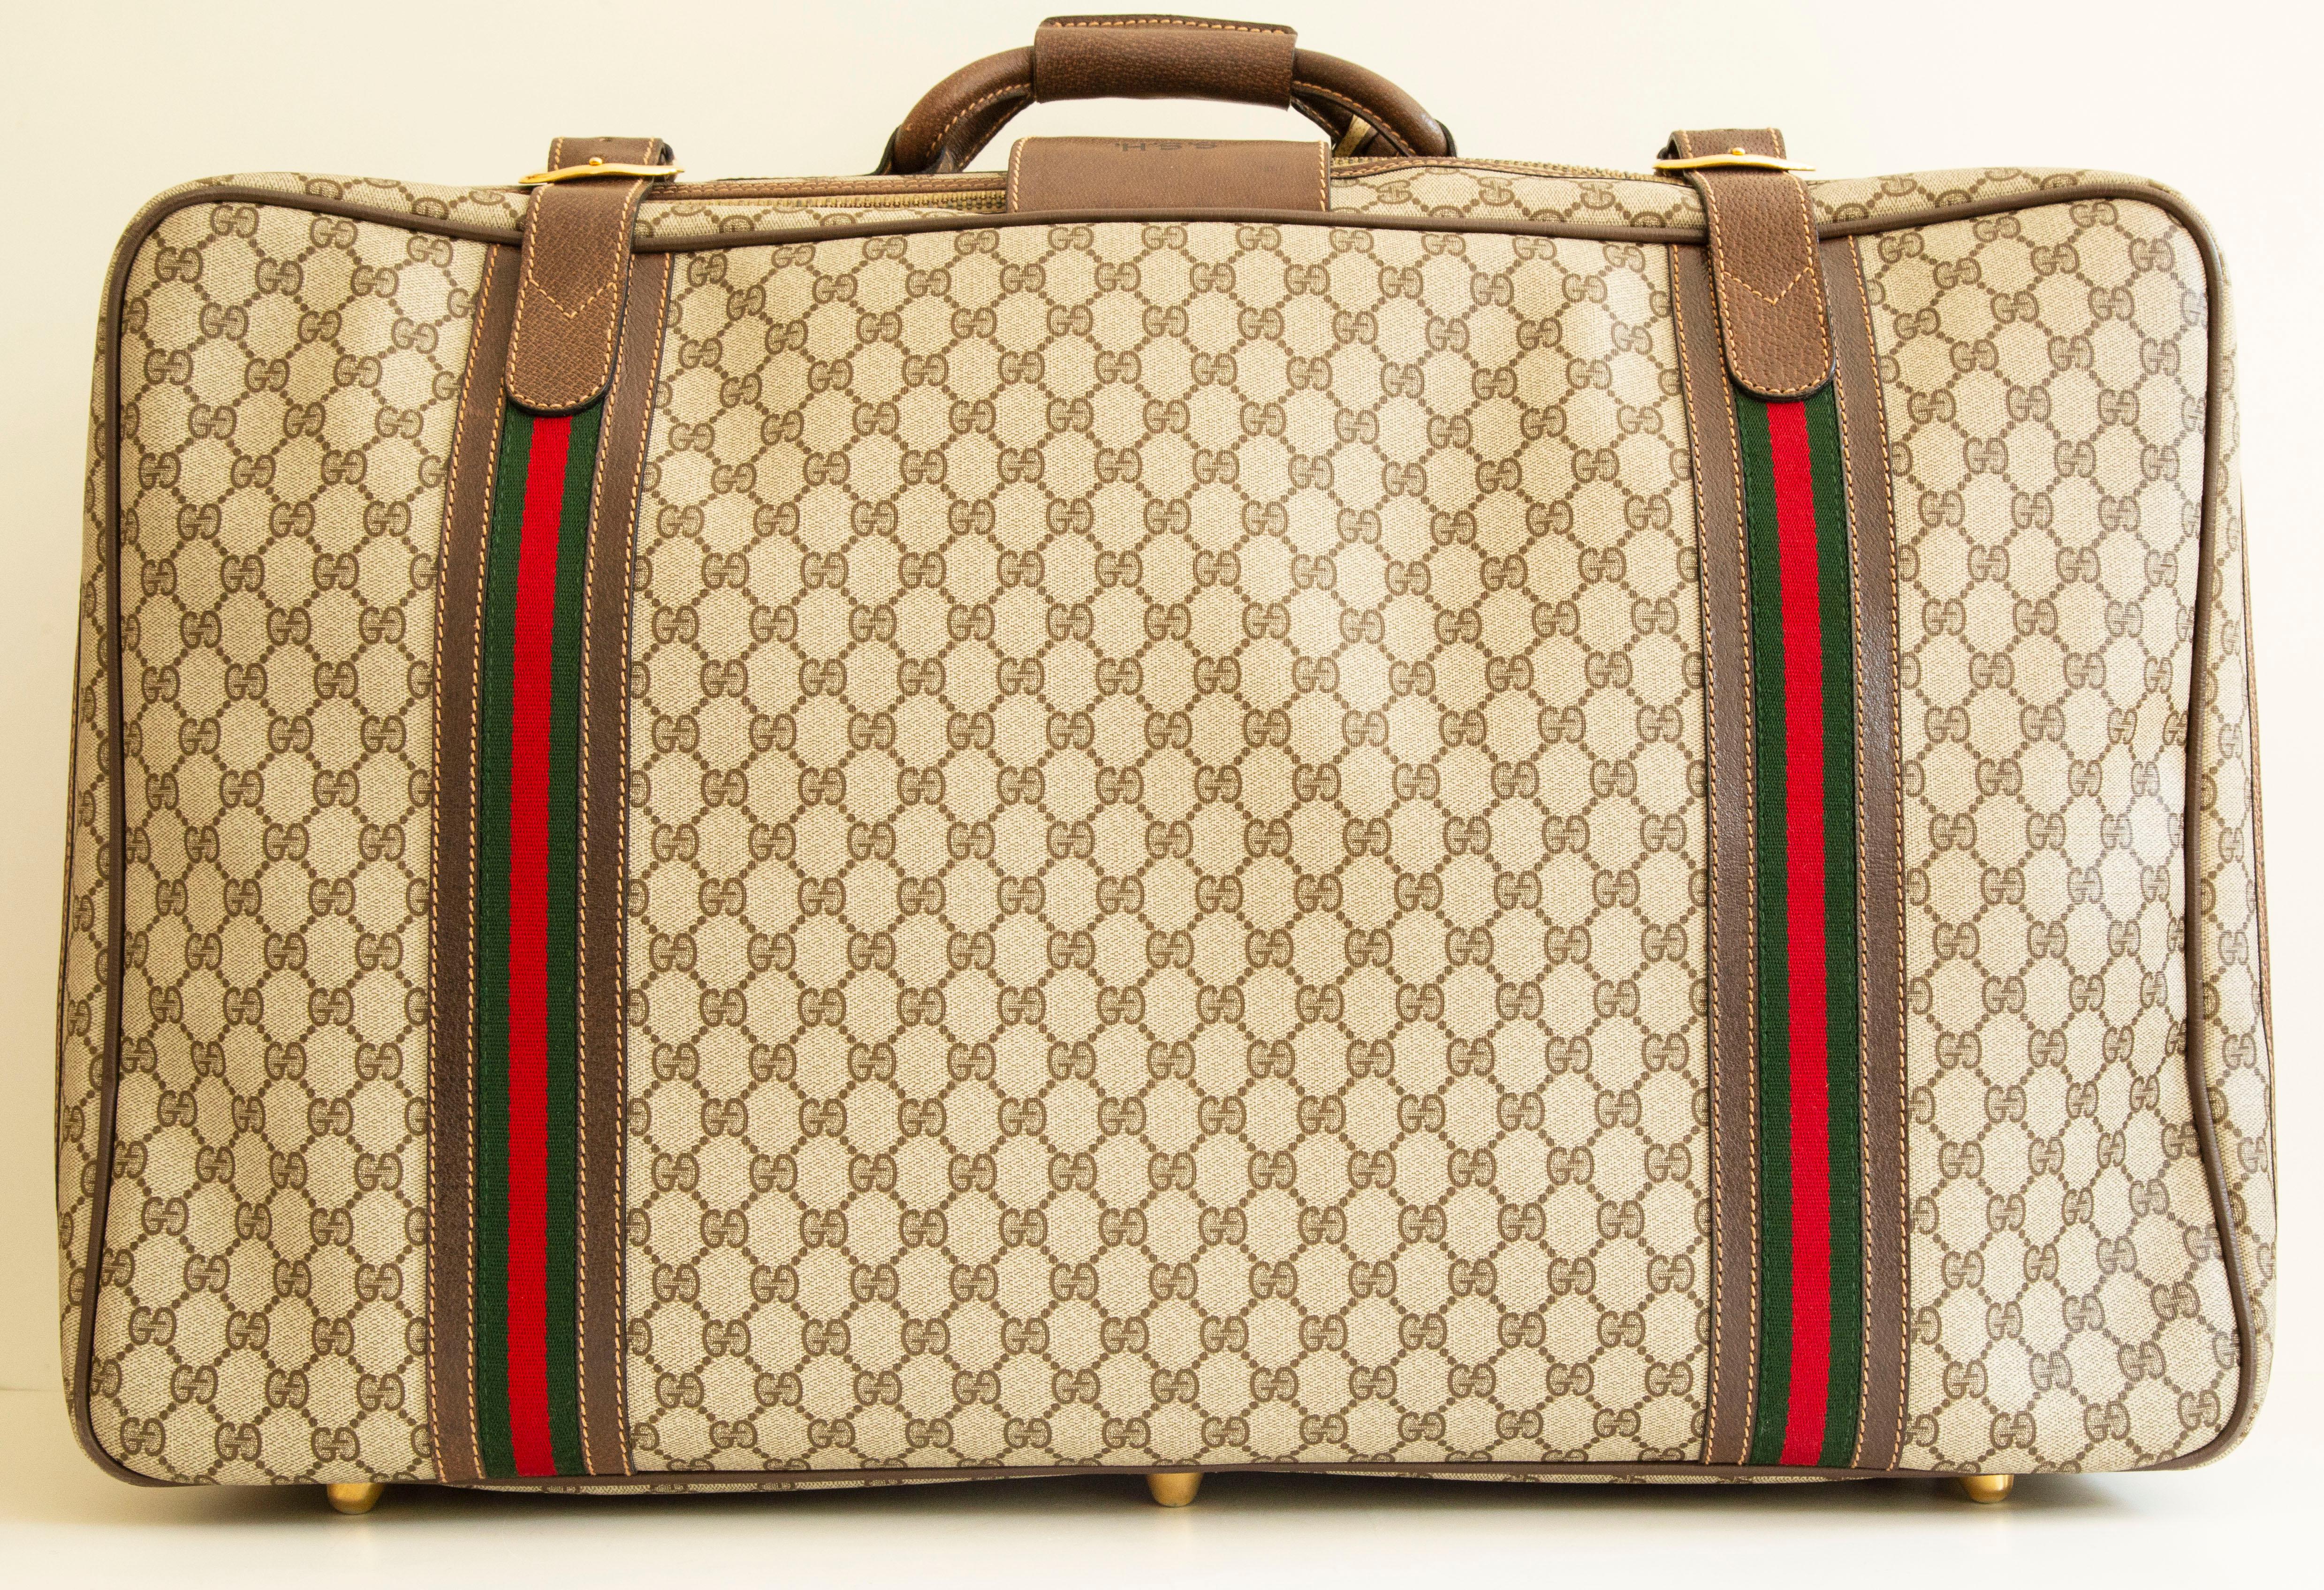 Une authentique grande valise vintage de Gucci. La valise présente un extérieur en toile GG classique, une garniture en cuir marron avec des bandes de course Gucci et des ferrures dorées. Le sac peut être fermé par une fermeture à glissière et